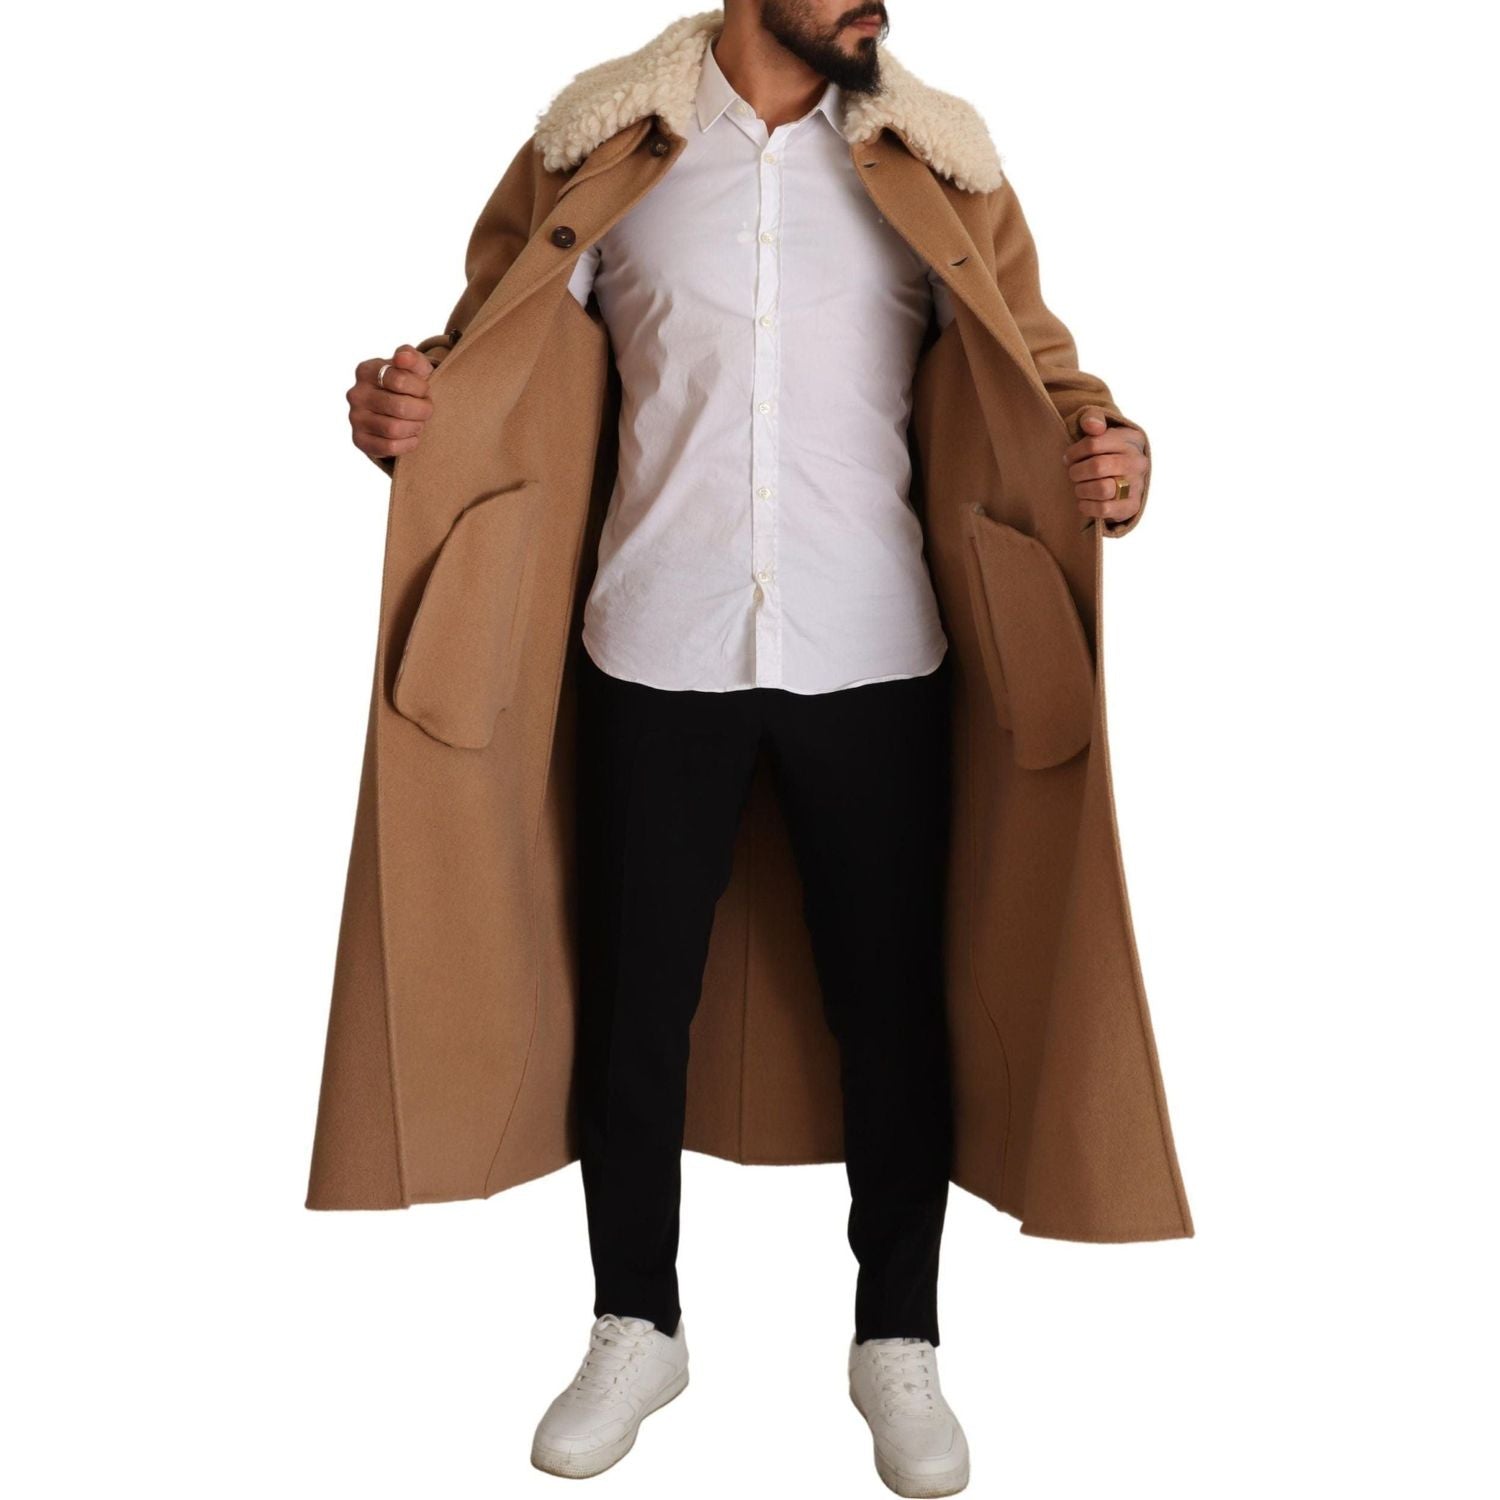 Dolce & Gabbana | Beige Camel Skin Cashmere Shearling Overcoat Jacket  | McRichard Designer Brands